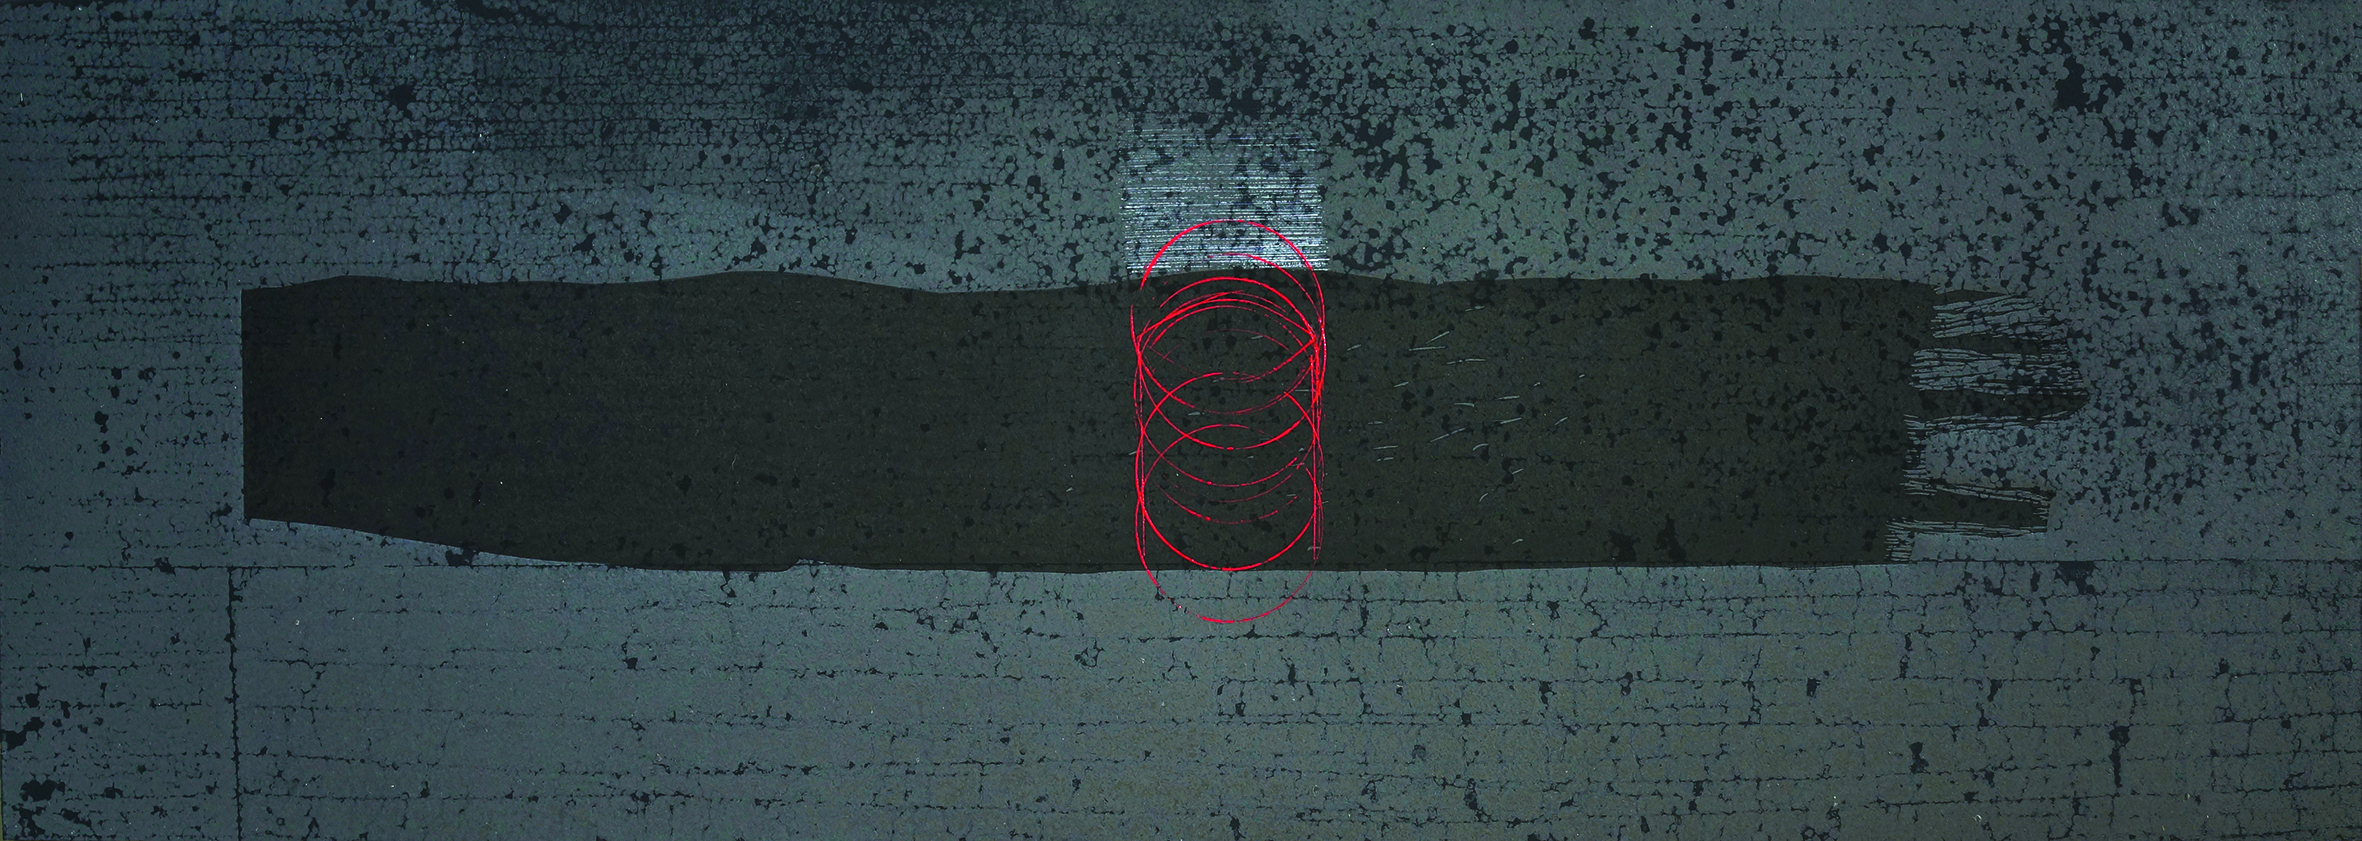 Na zdjęciu widać grafikę w ciemnych szarościach. W centrum jest poziomy pas w kolorze ciemnym szarym. W centrum całości na pasie są czerwone okręgi. 